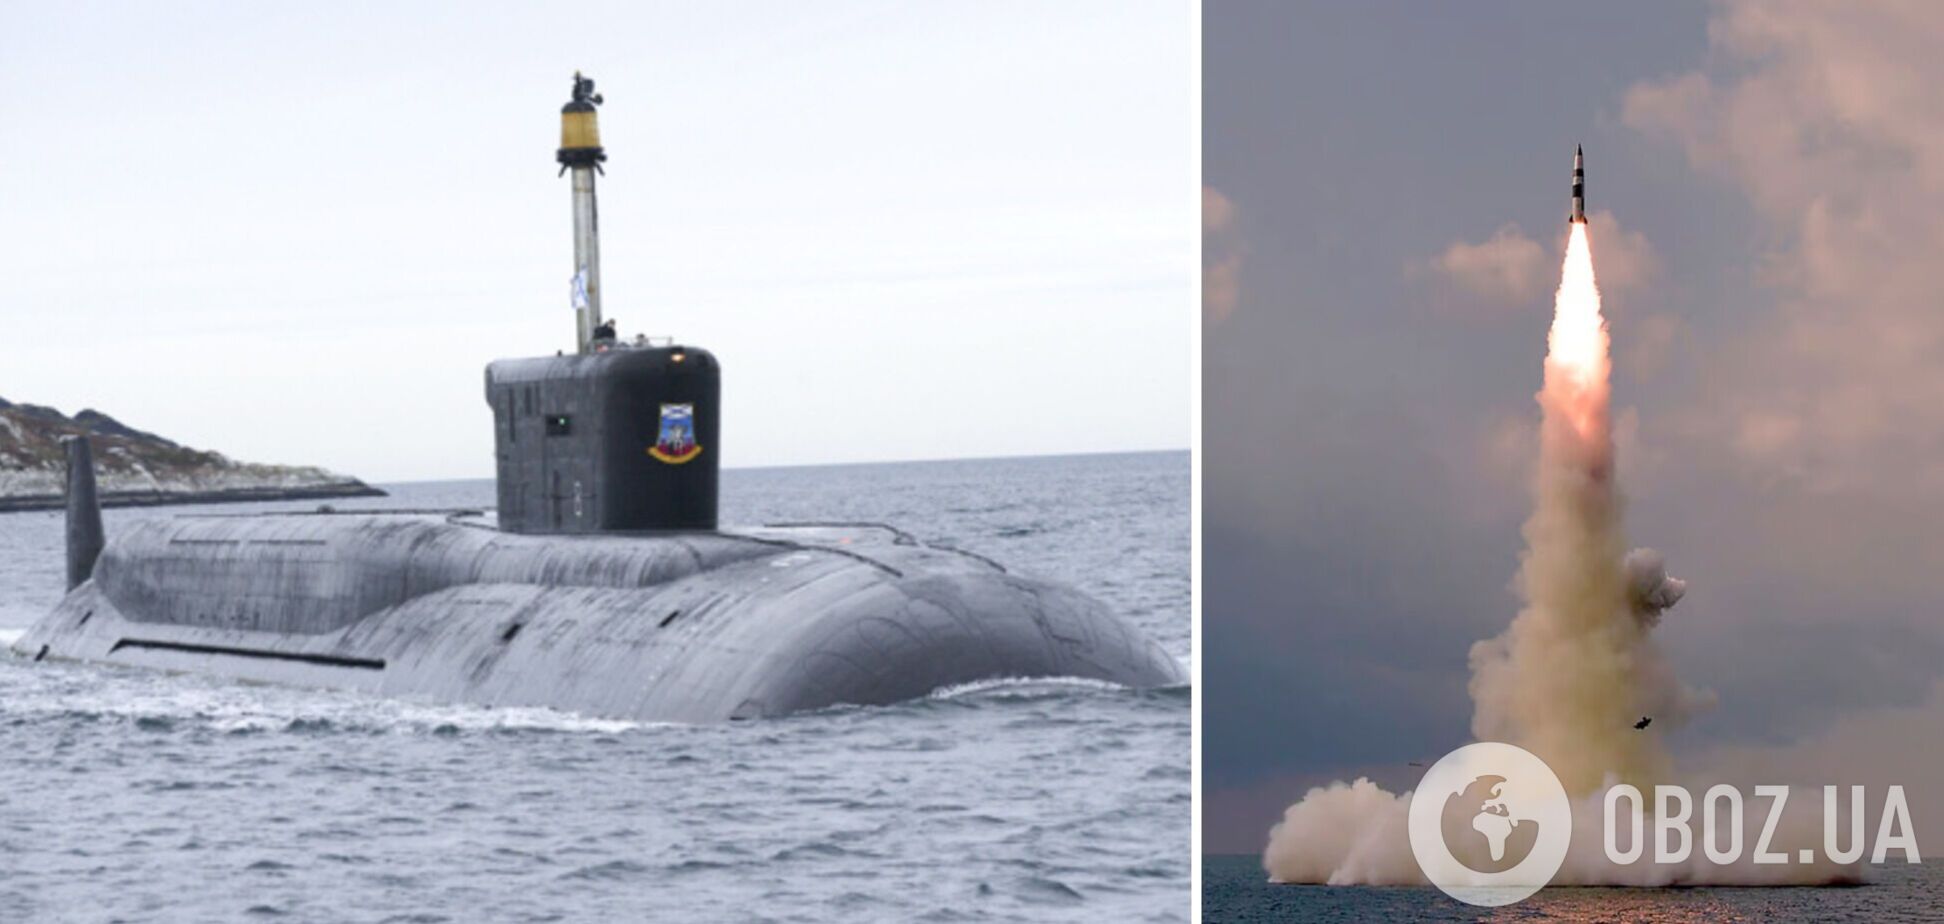 РФ вывела в Черное море подводный ракетоноситель